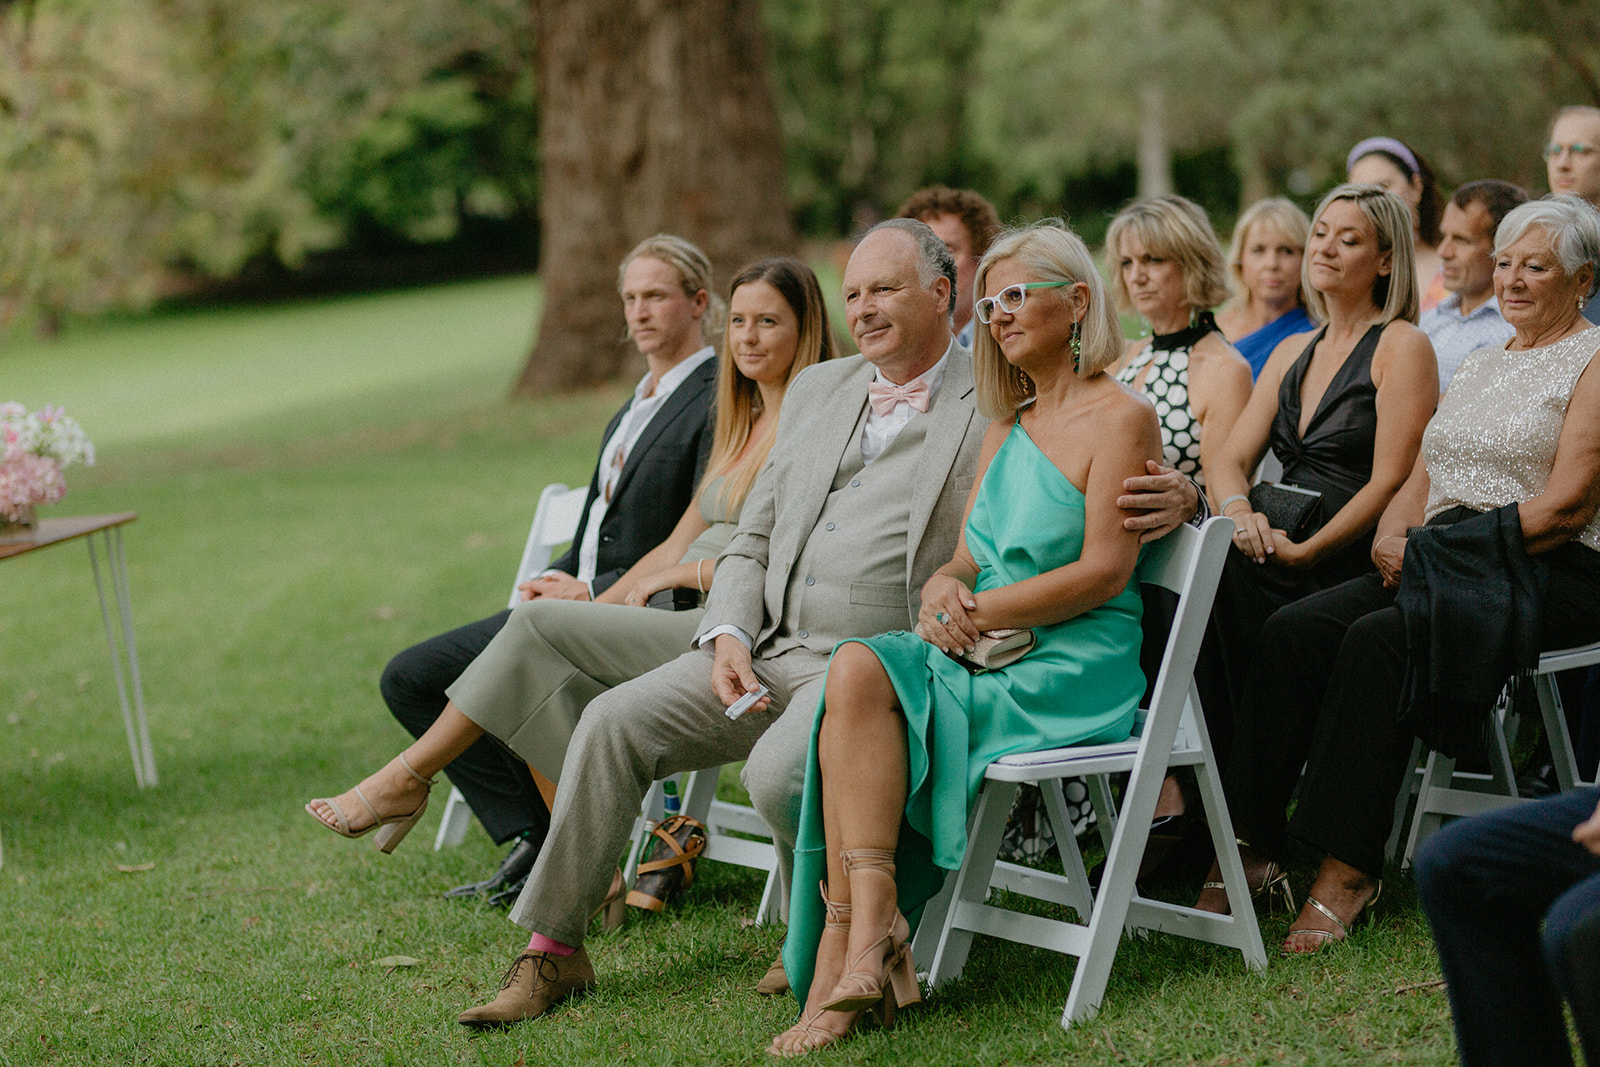 Modern Timeless Sydney Botanic Garden Wedding Ceremony